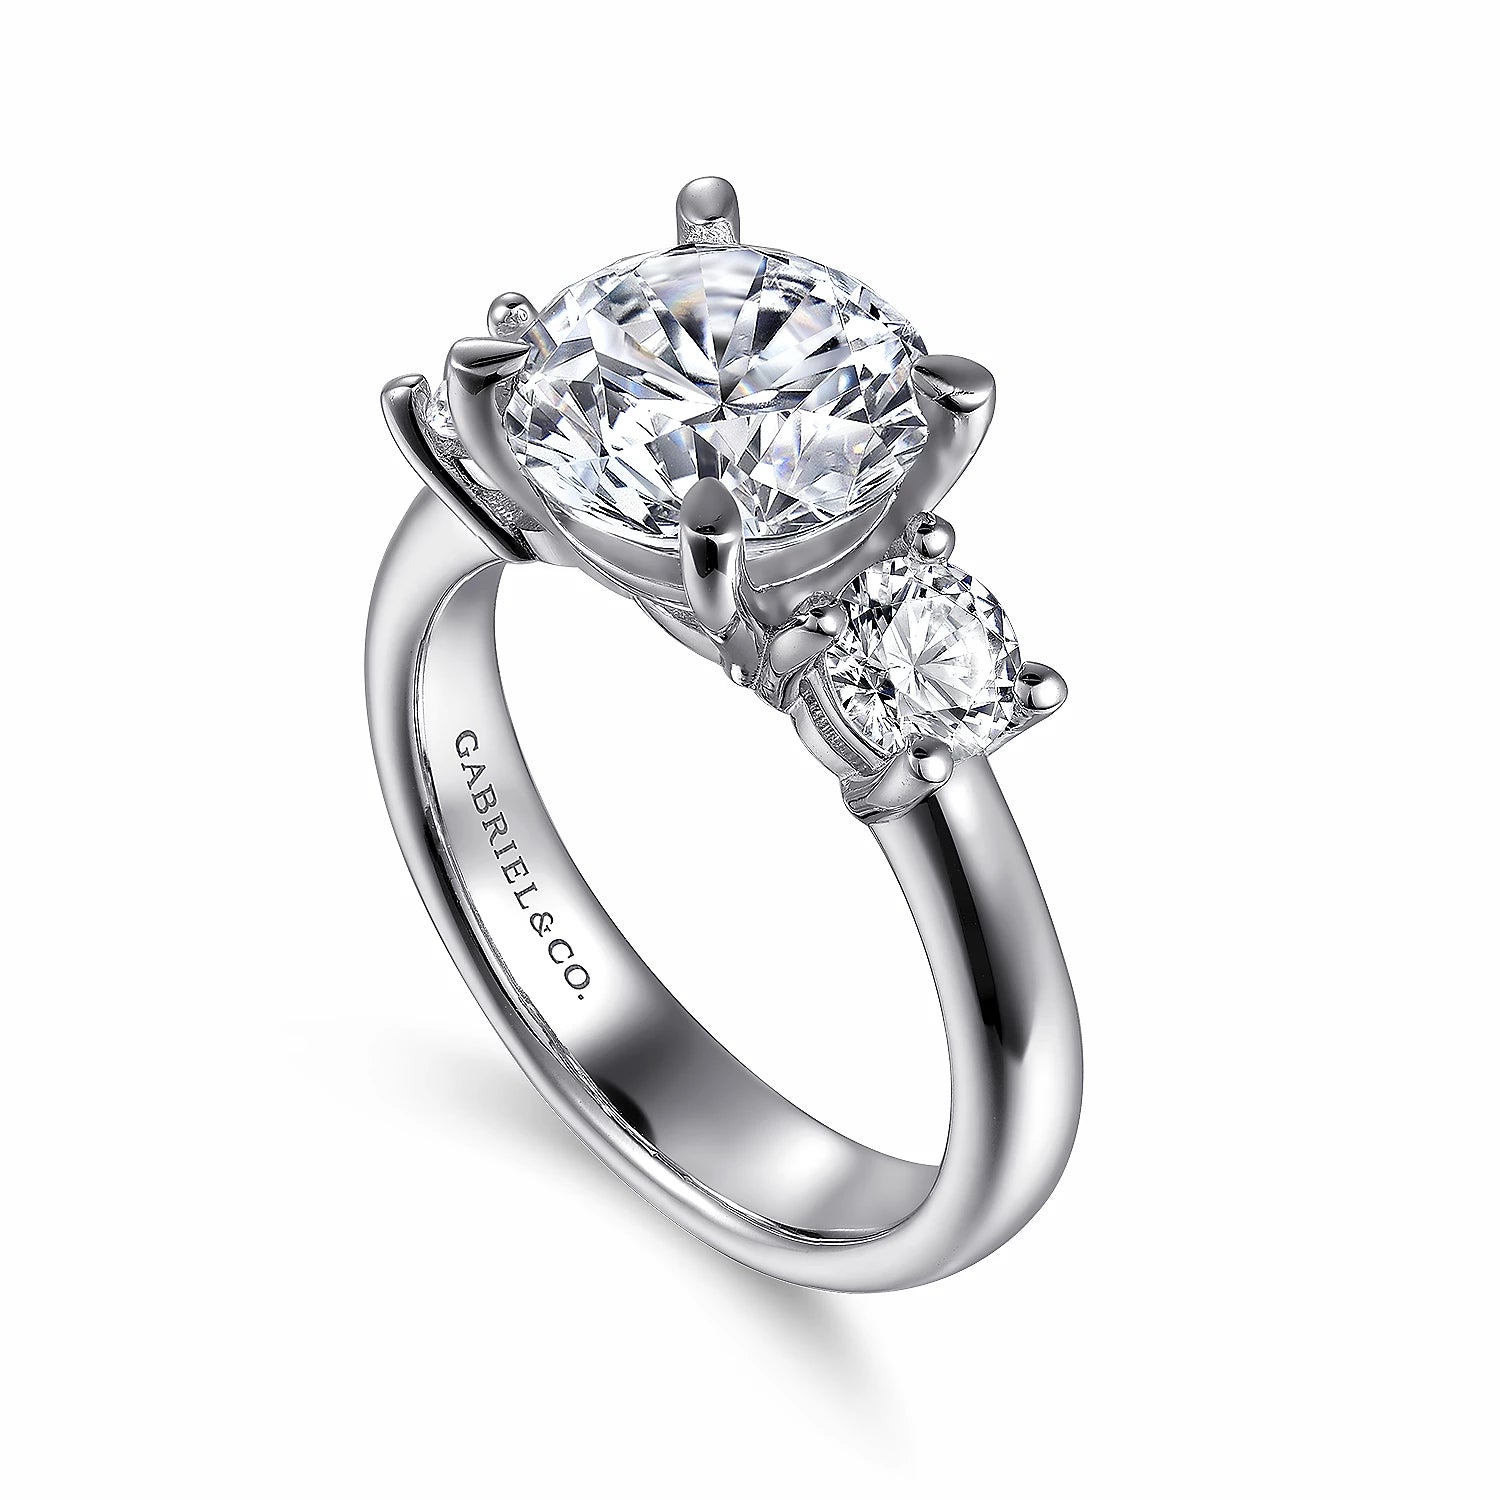 Beladora 'Bespoke' Open Band Diamond Ring, 0.73 tota #513434